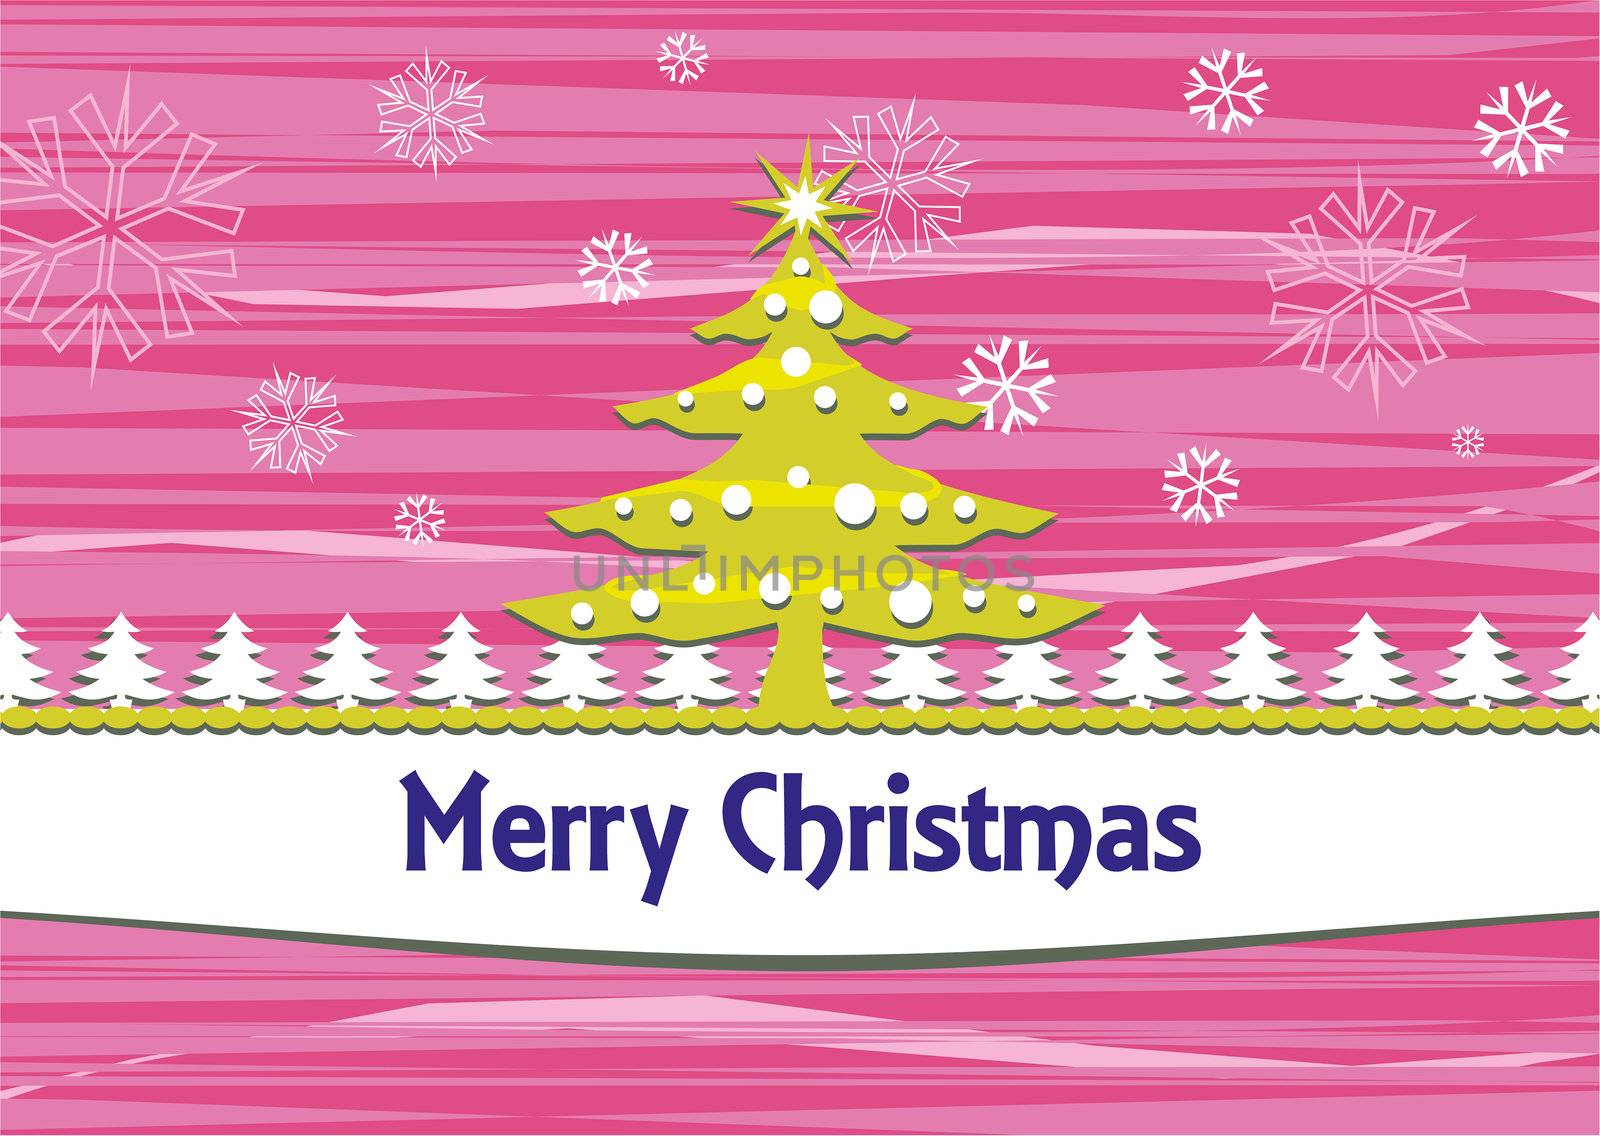 An image of a nice Christmas card